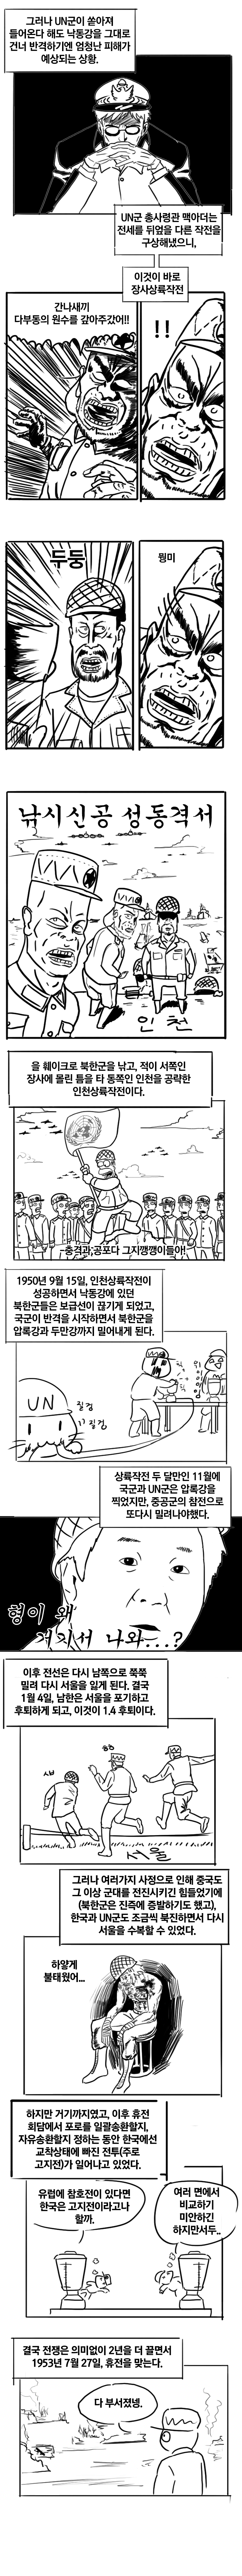 한국전쟁 만화3.png